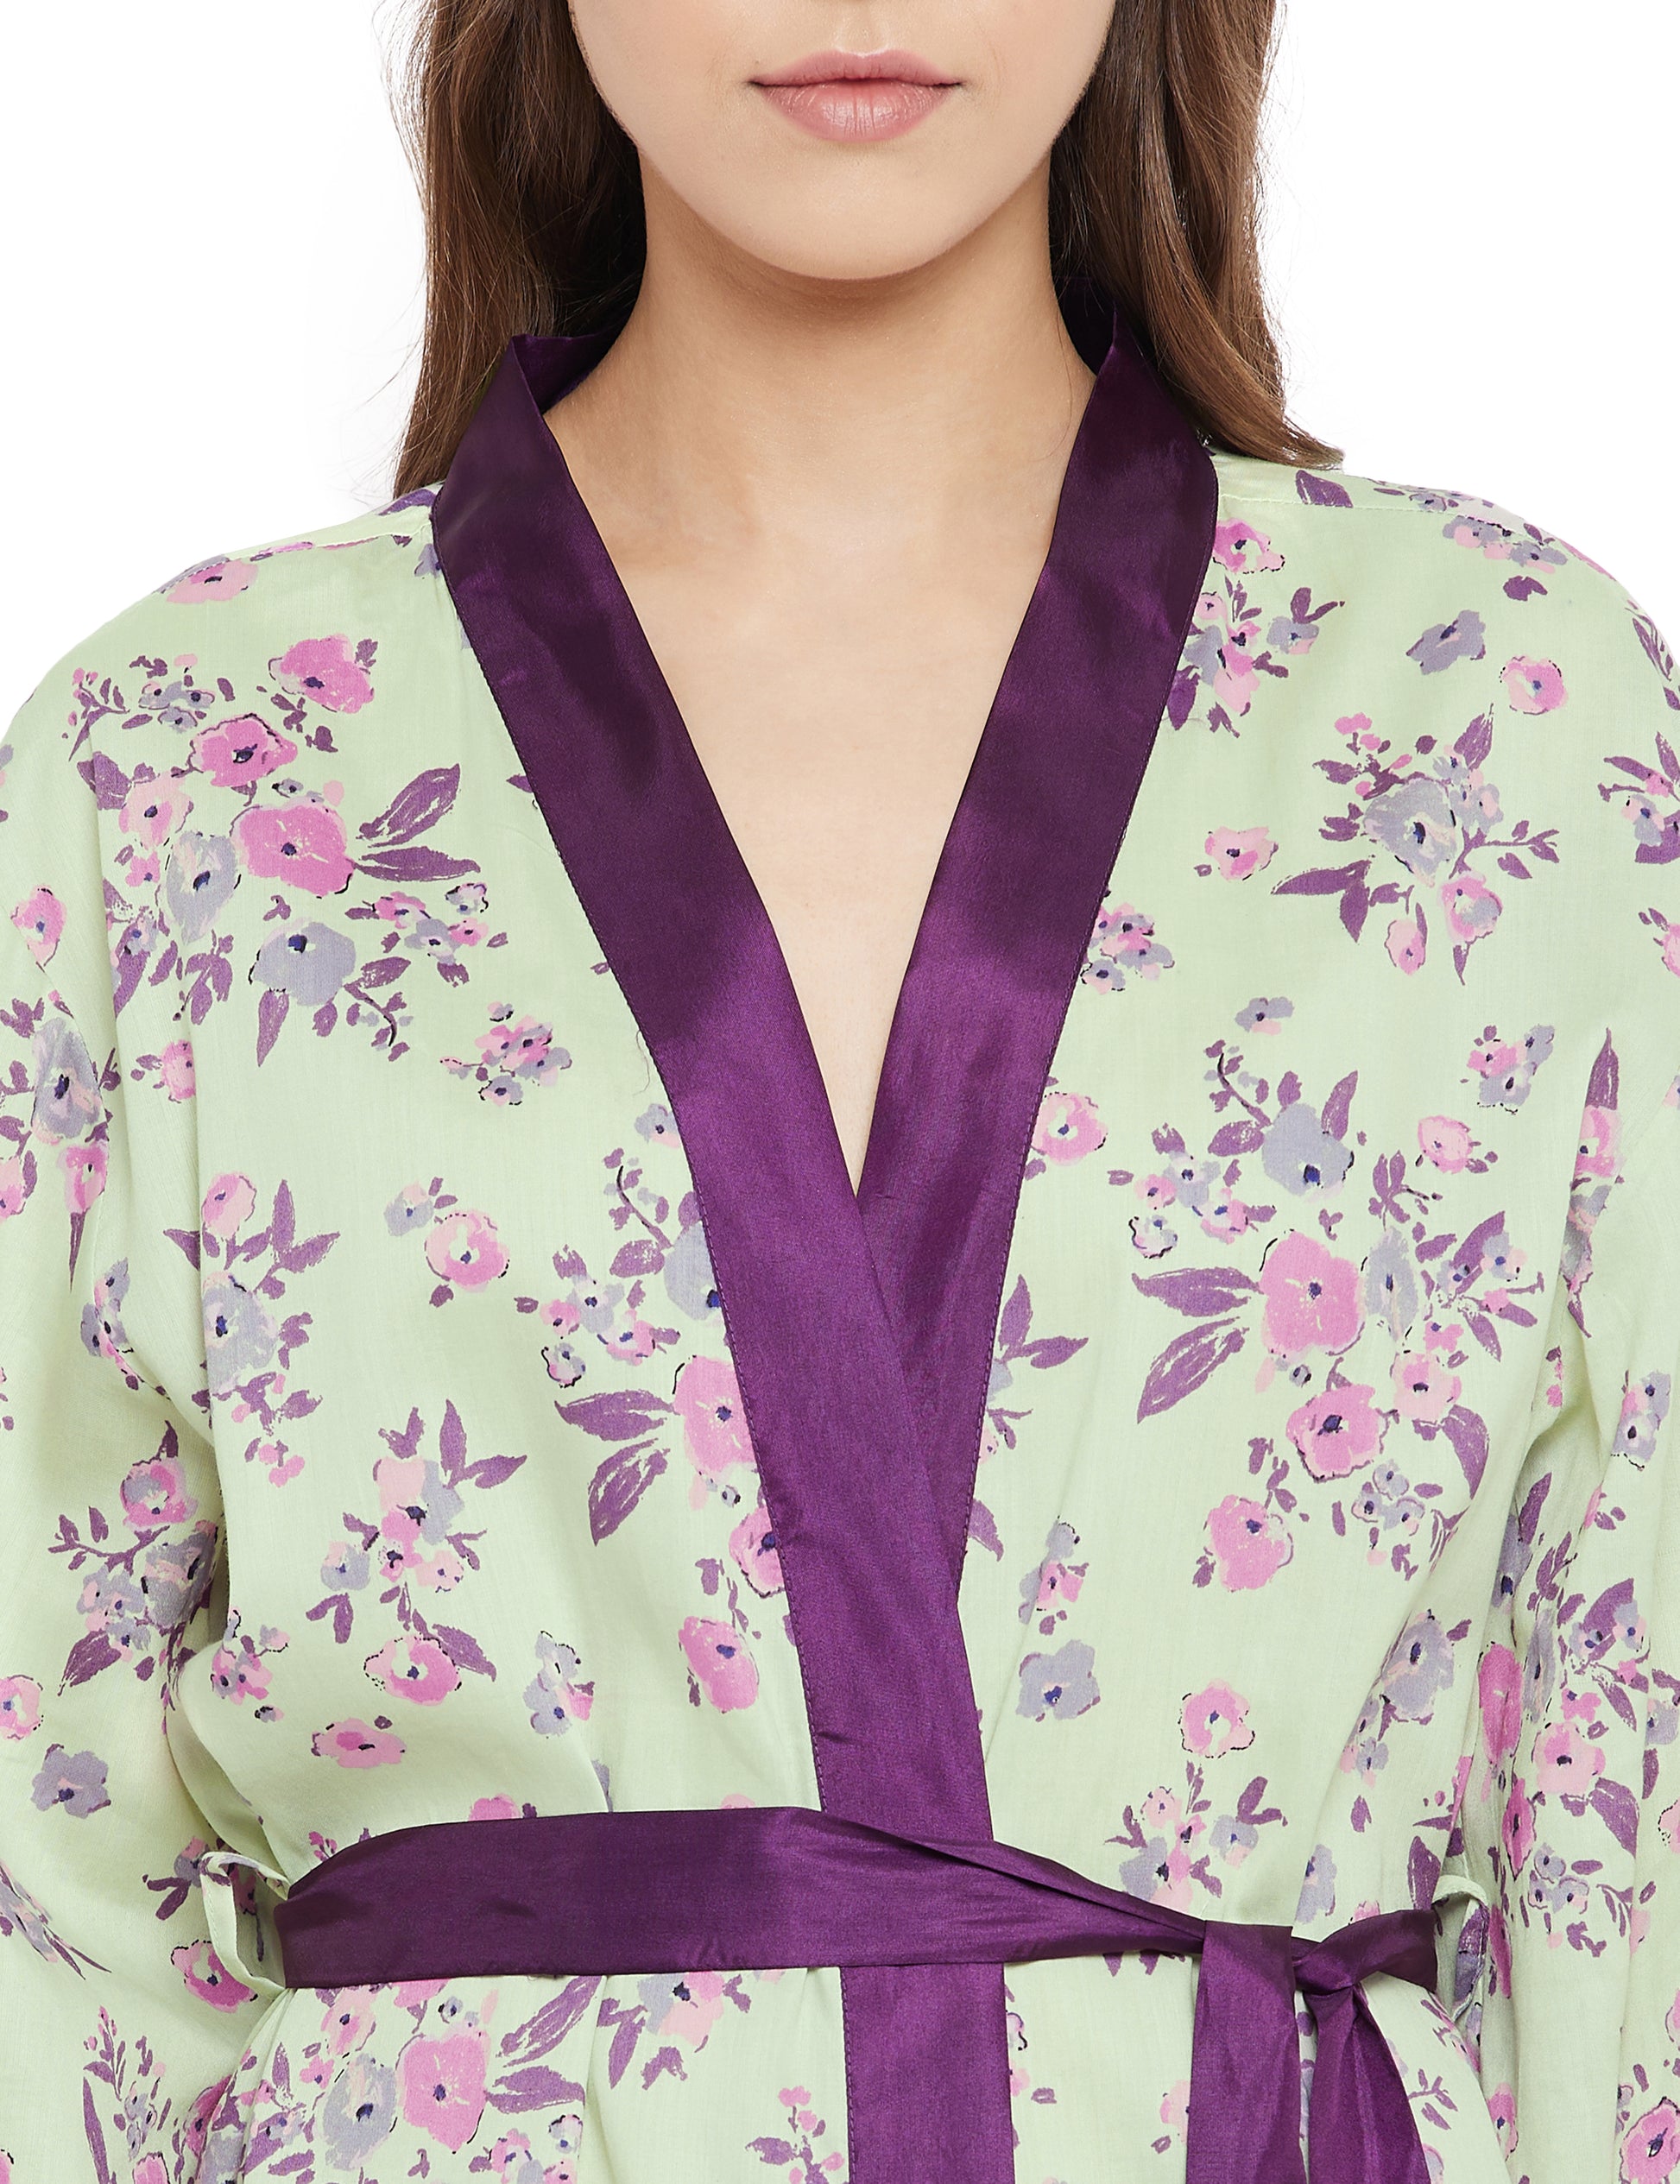 Alice Cotton Satin Kimono Robe Satin Robe 55.00 Indigo Paisley